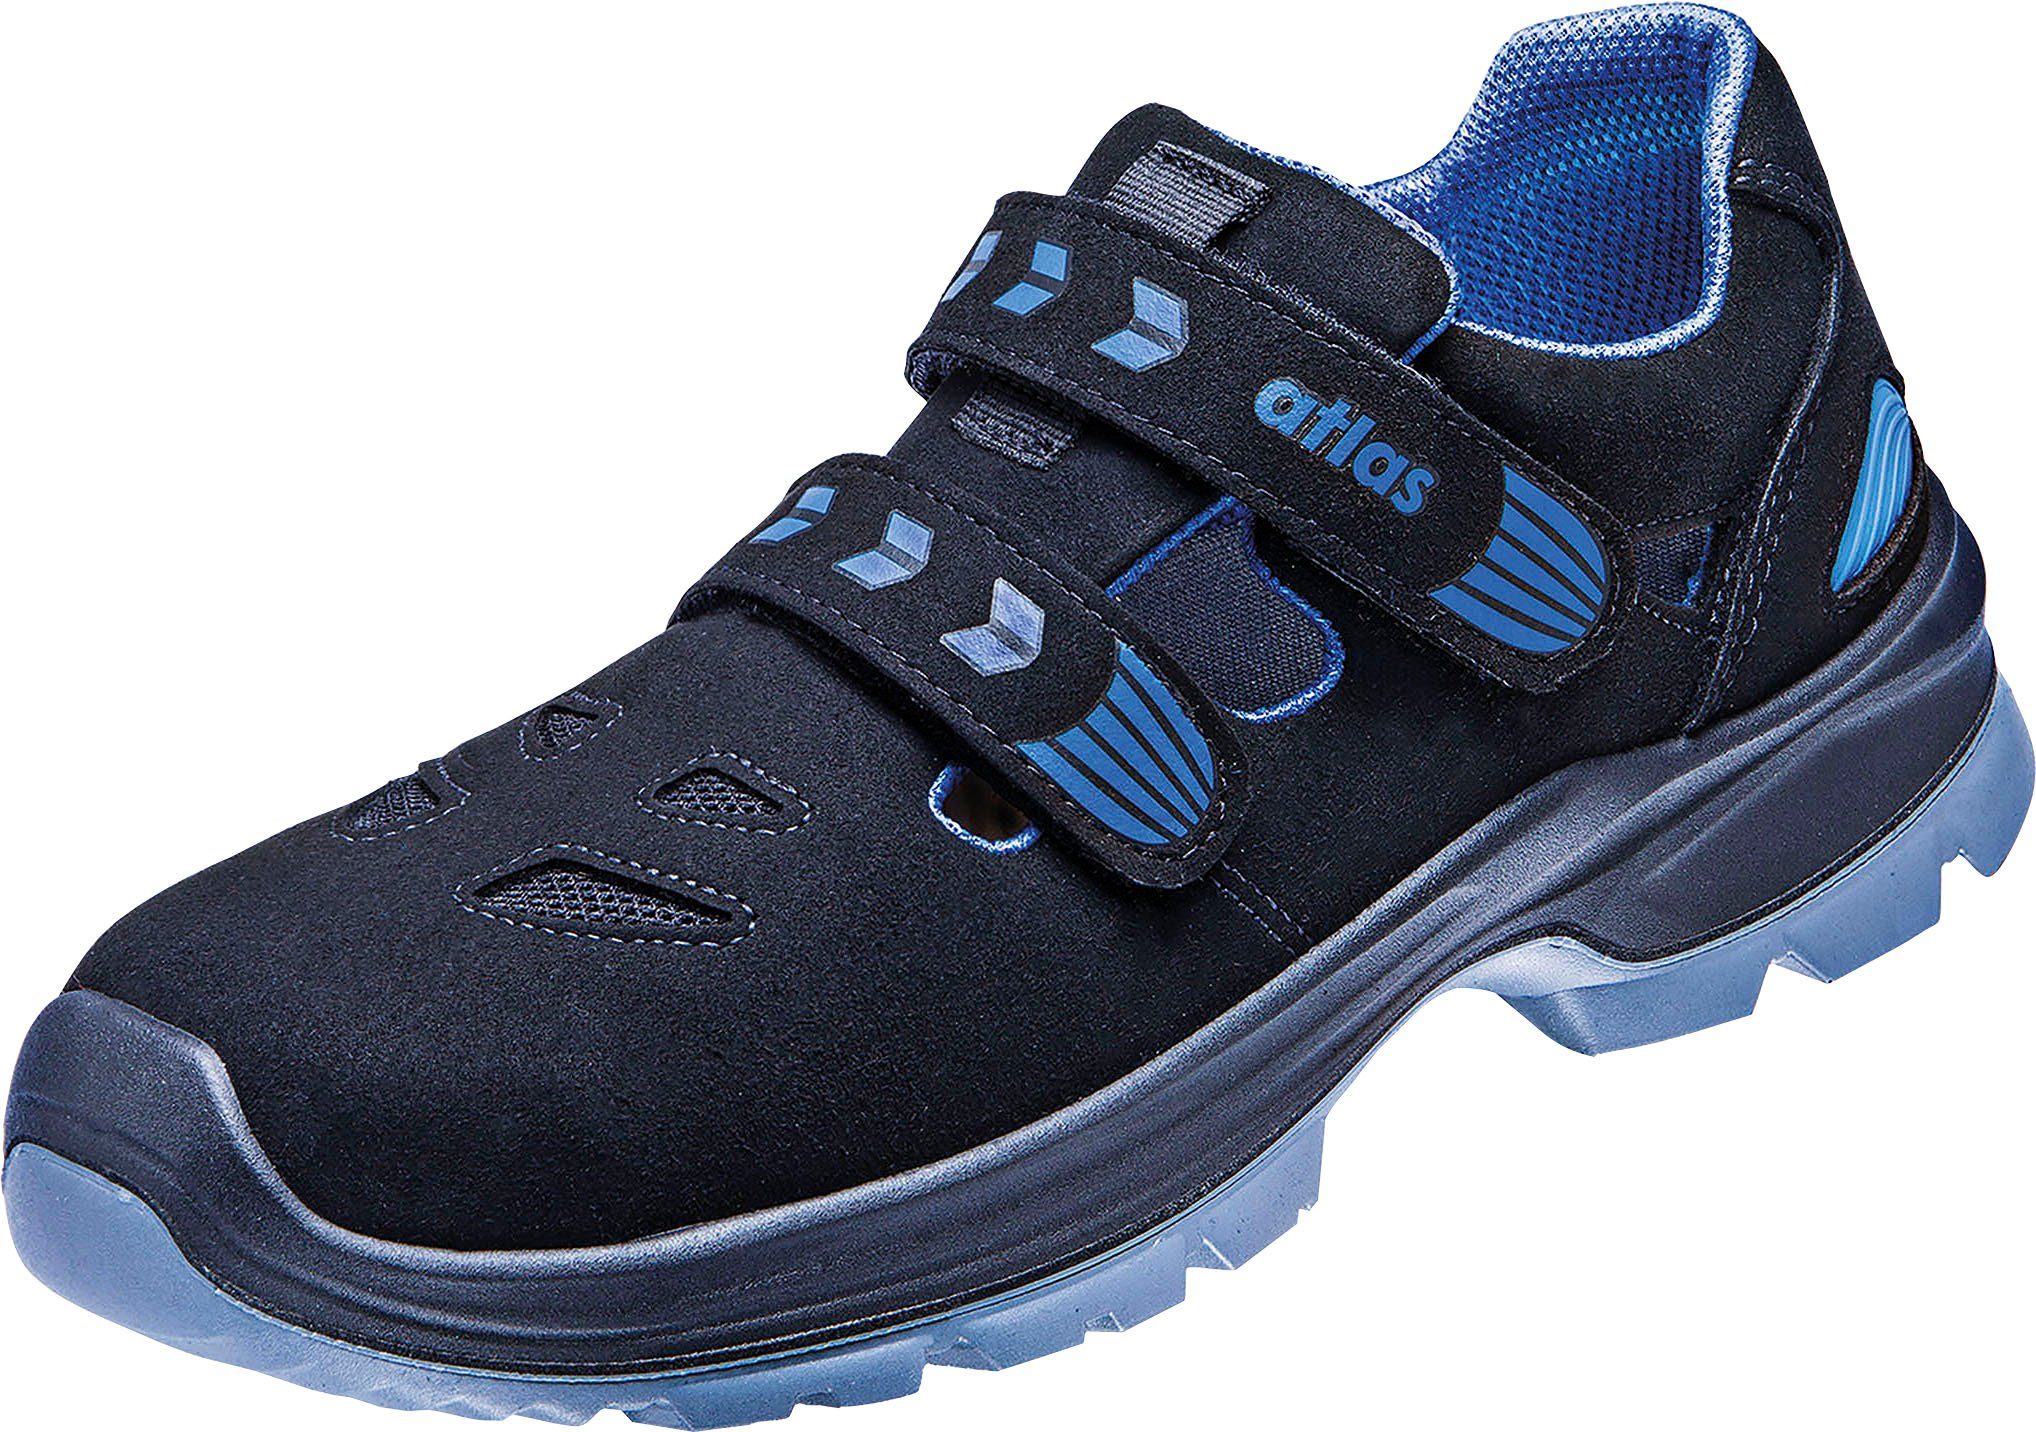 Schuhweite Sandale, Schuhe 12, S1 Sicherheitsklasse Sicherheitsschuh Atlas Ergo-Med 360